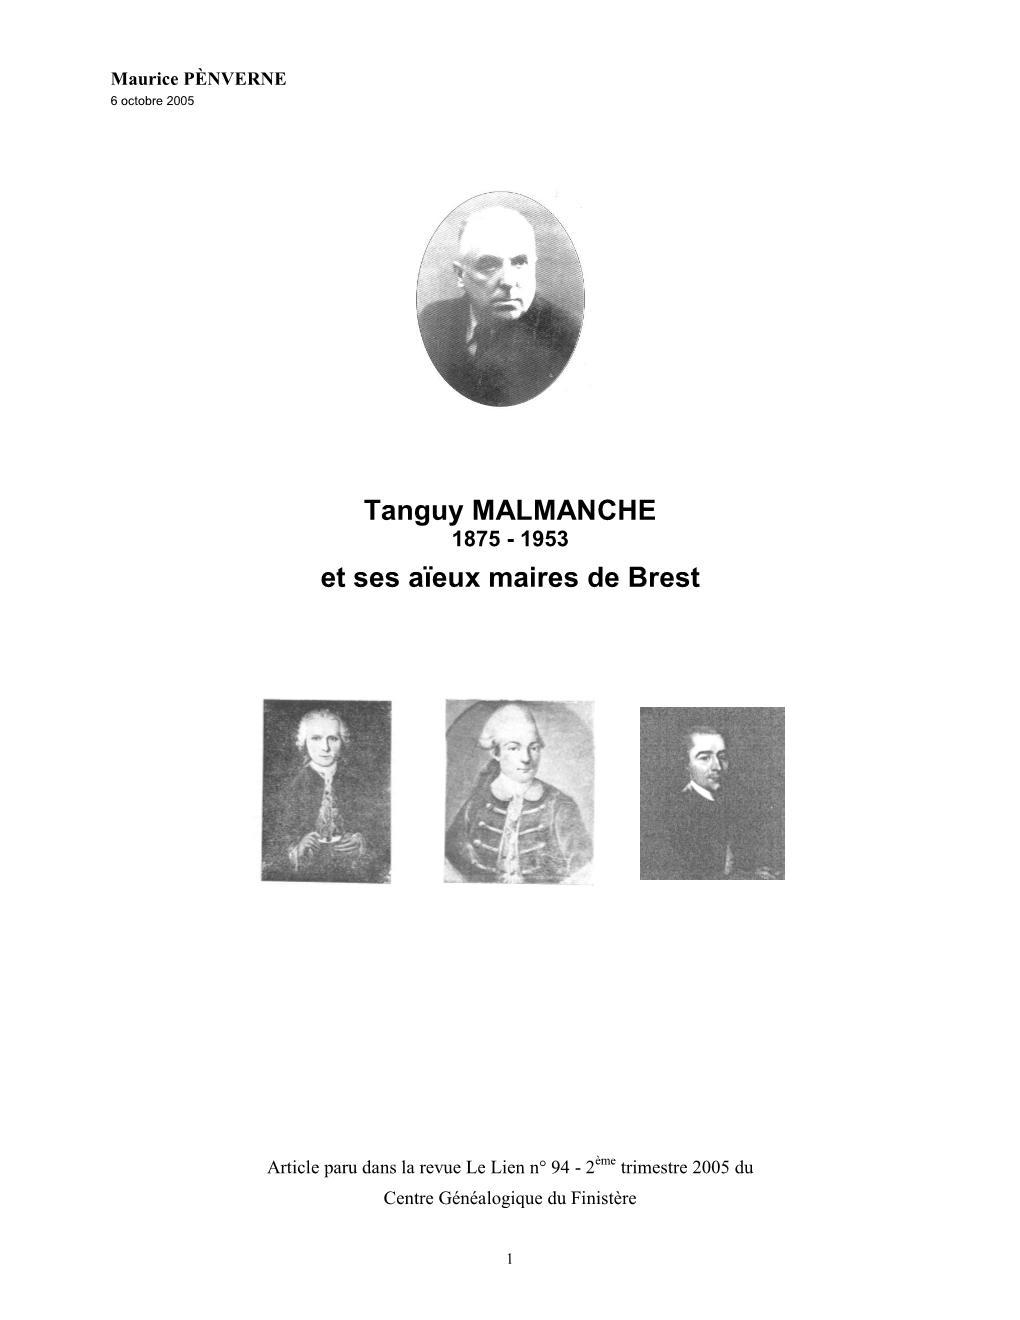 Tanguy MALMANCHE Et Ses Aïeux Maires De Brest